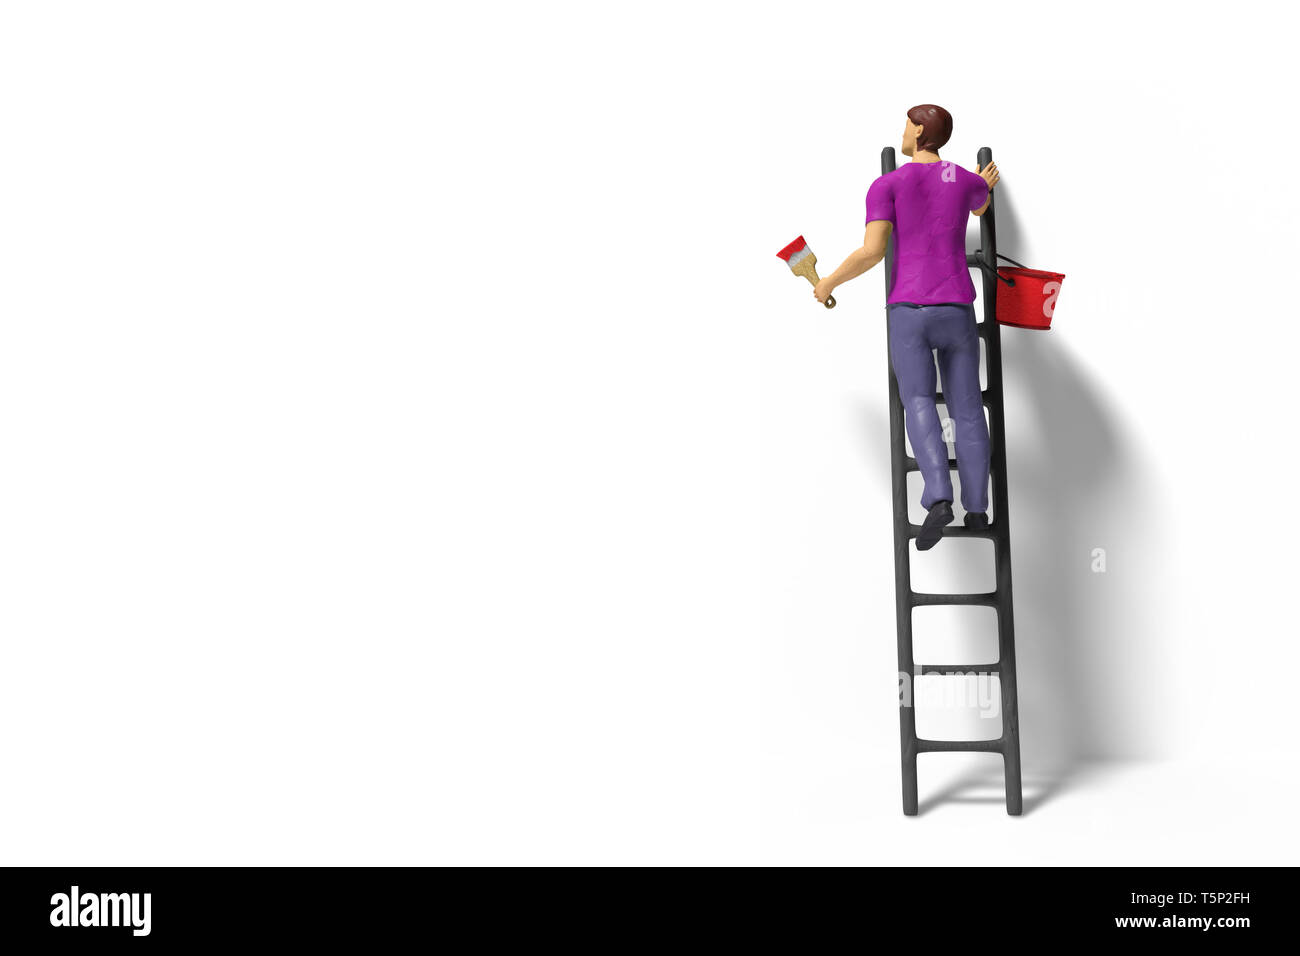 Spielzeug Miniatur Figur Charakter mit Leiter und roter Farbe vor einer Wand Stockfoto